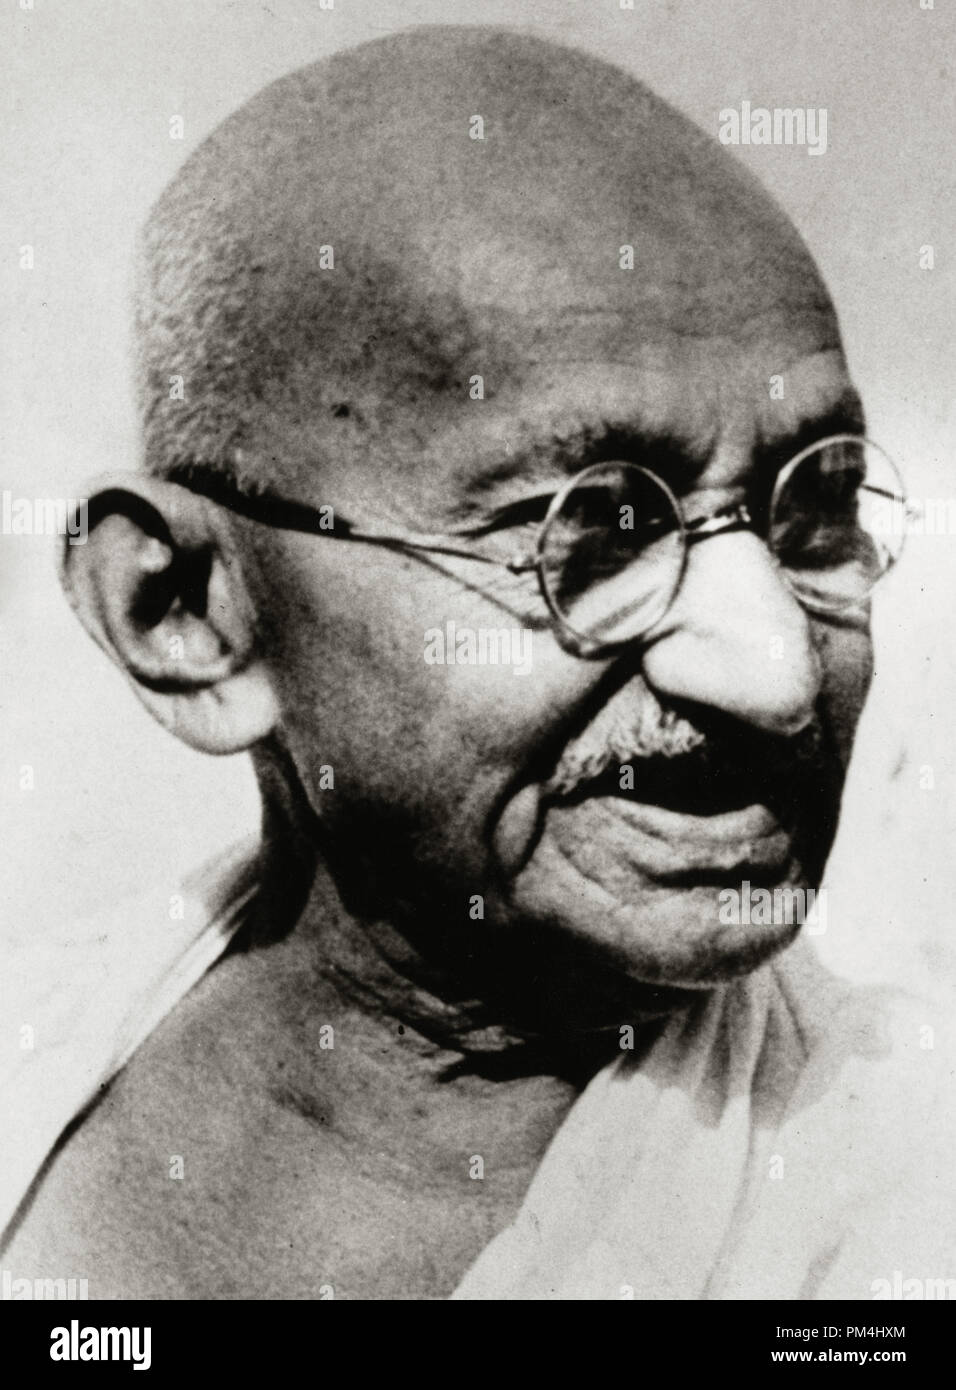 Mahatma Gandhi (Mohandas Karamchand Gandhi) auf seinem 78. Geburtstag, 22. September 1946 Datei Referenz Nr. 1003 433 THA Stockfoto